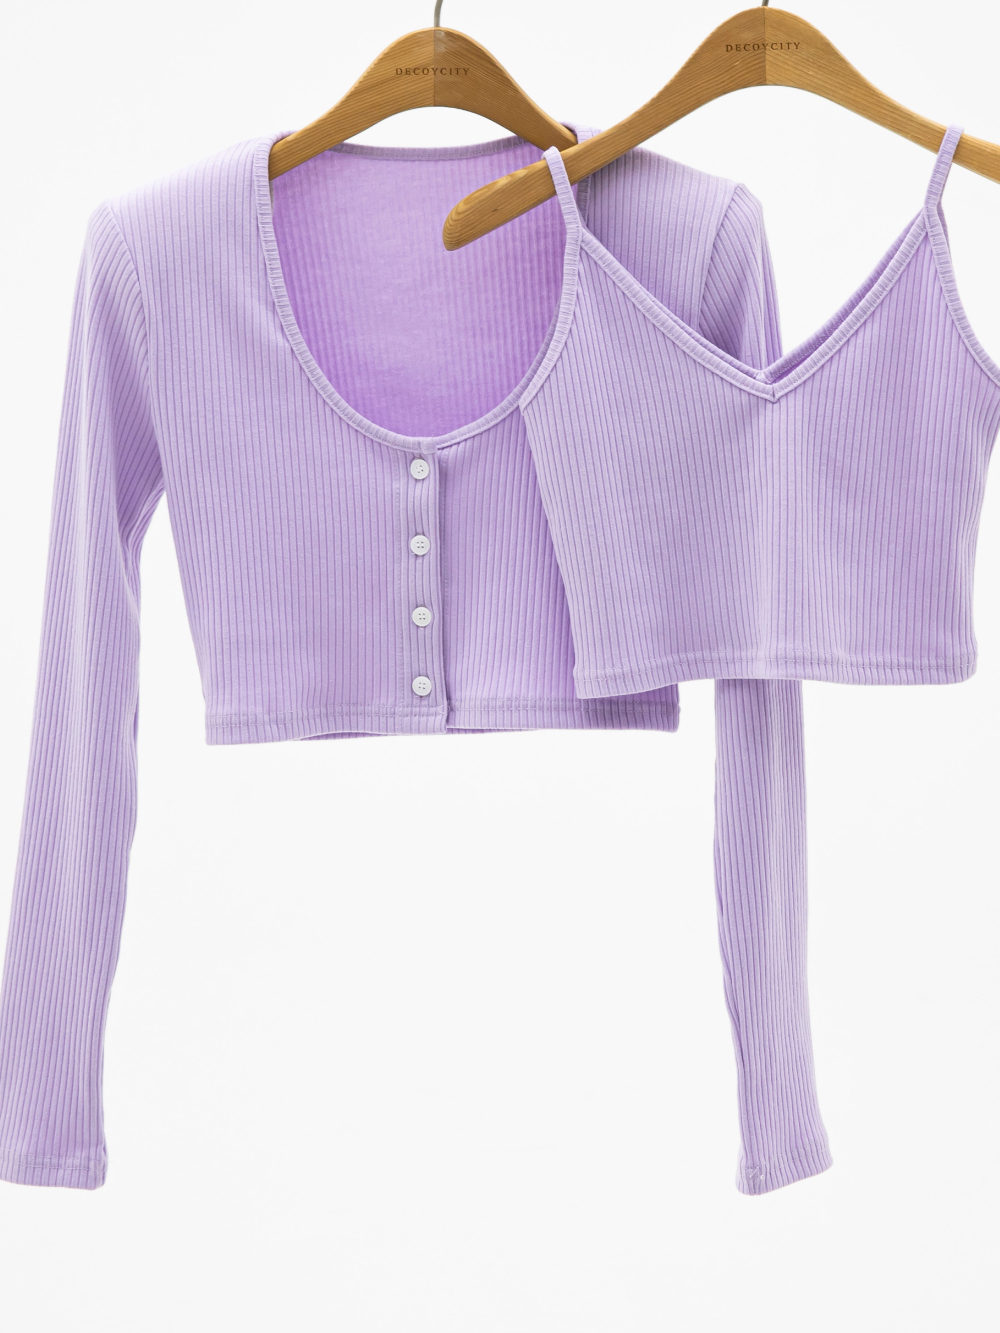 Pants lavender color image-S3L9